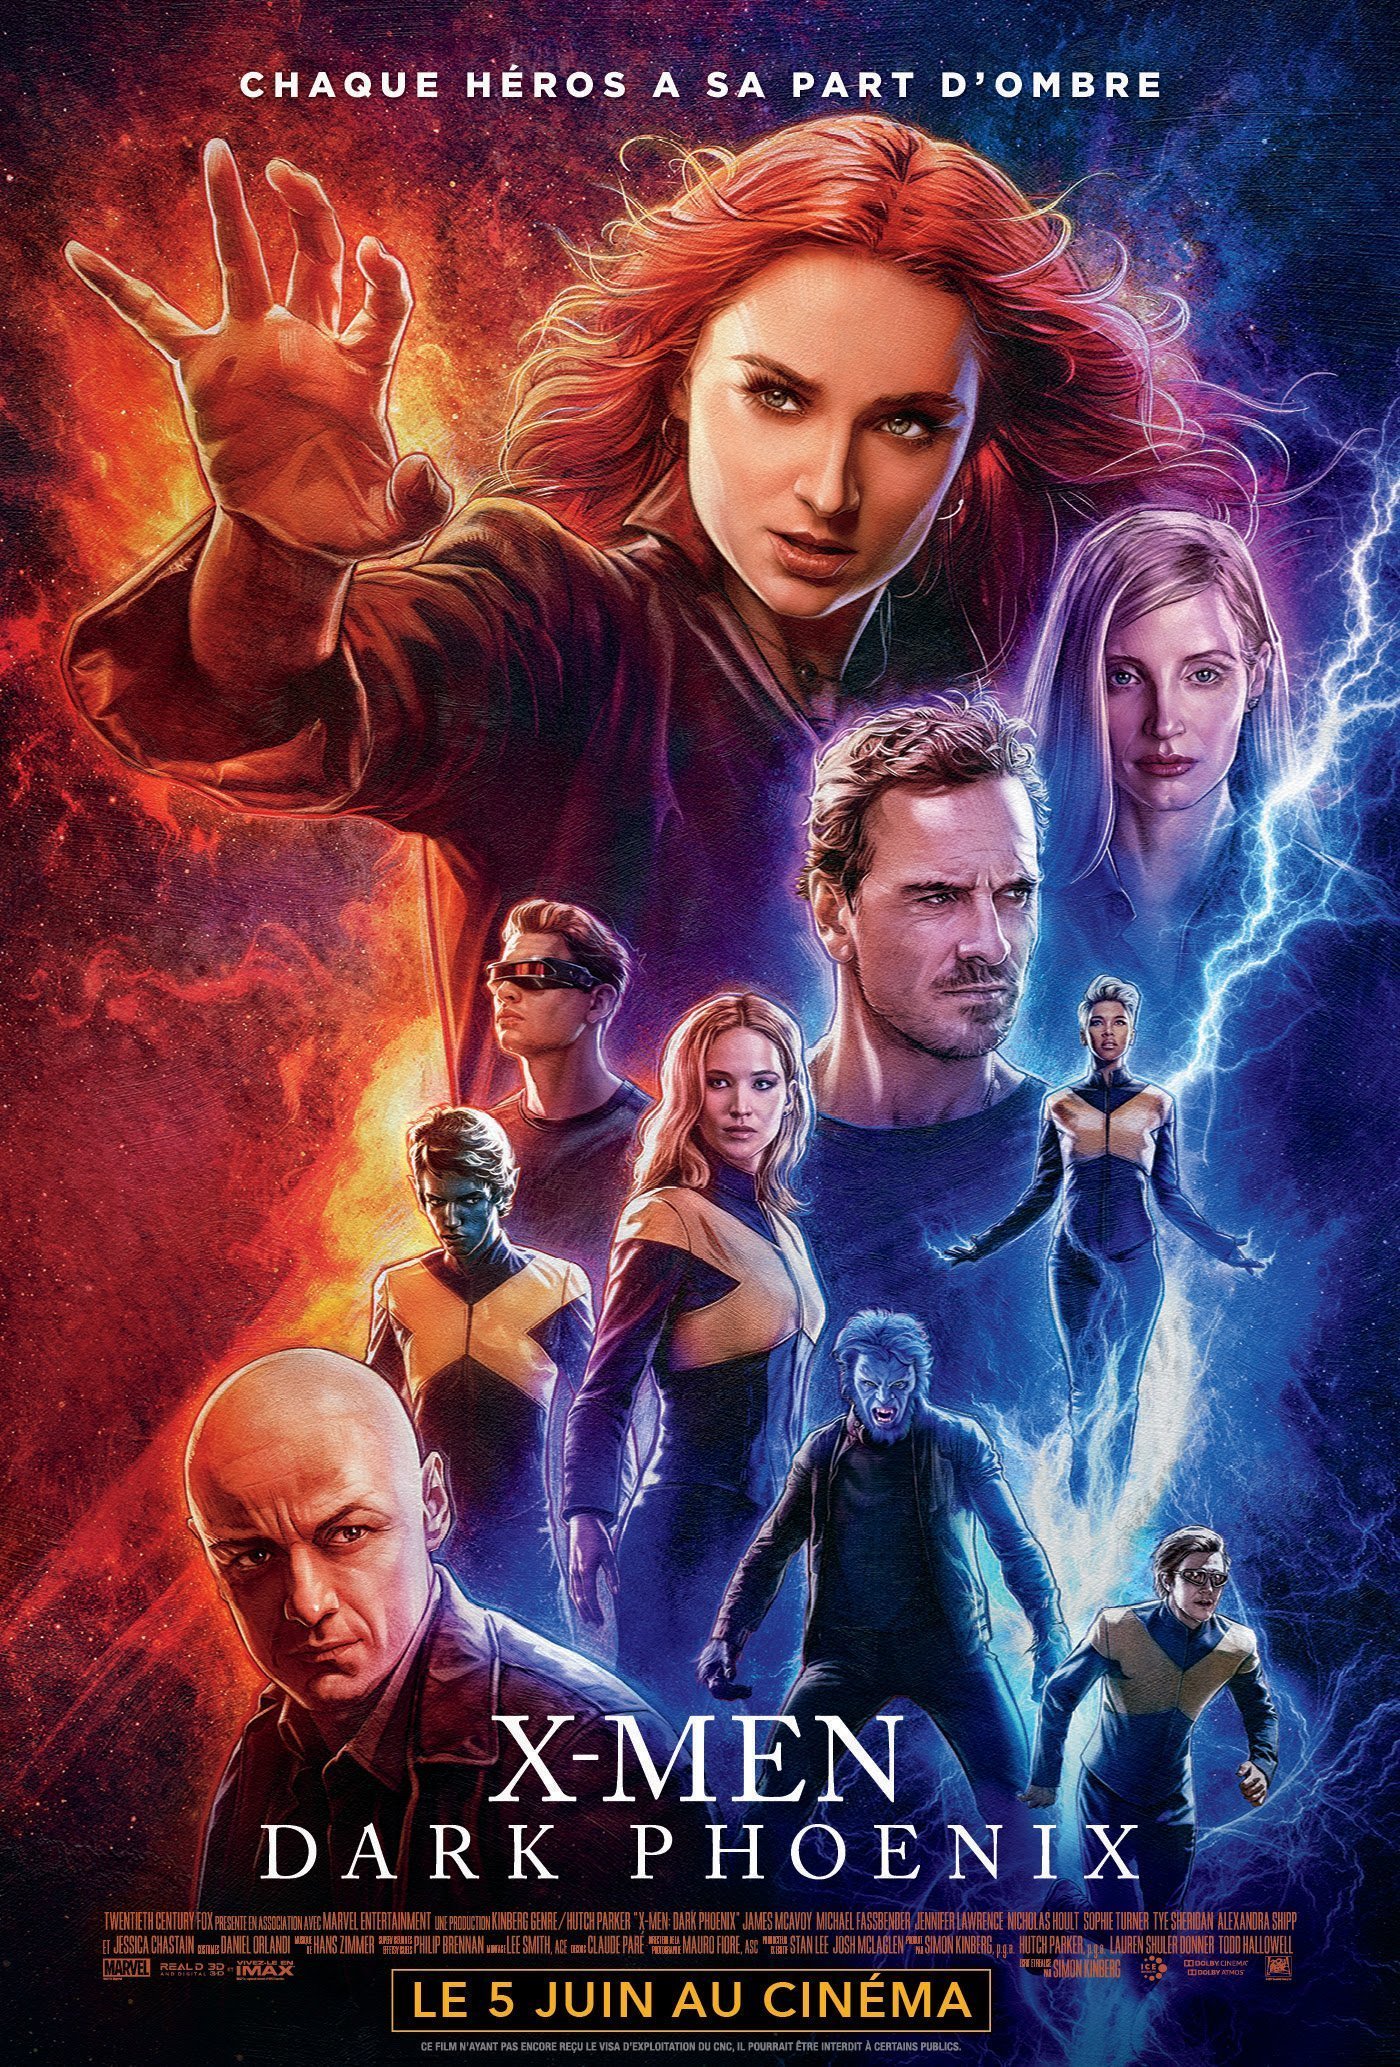 Affiche française crayonnée du film X-Men: Dark Phoenix écrit et réalisé par Simon Kinberg avec la tagline "Chaque héros a sa part d'ombre"